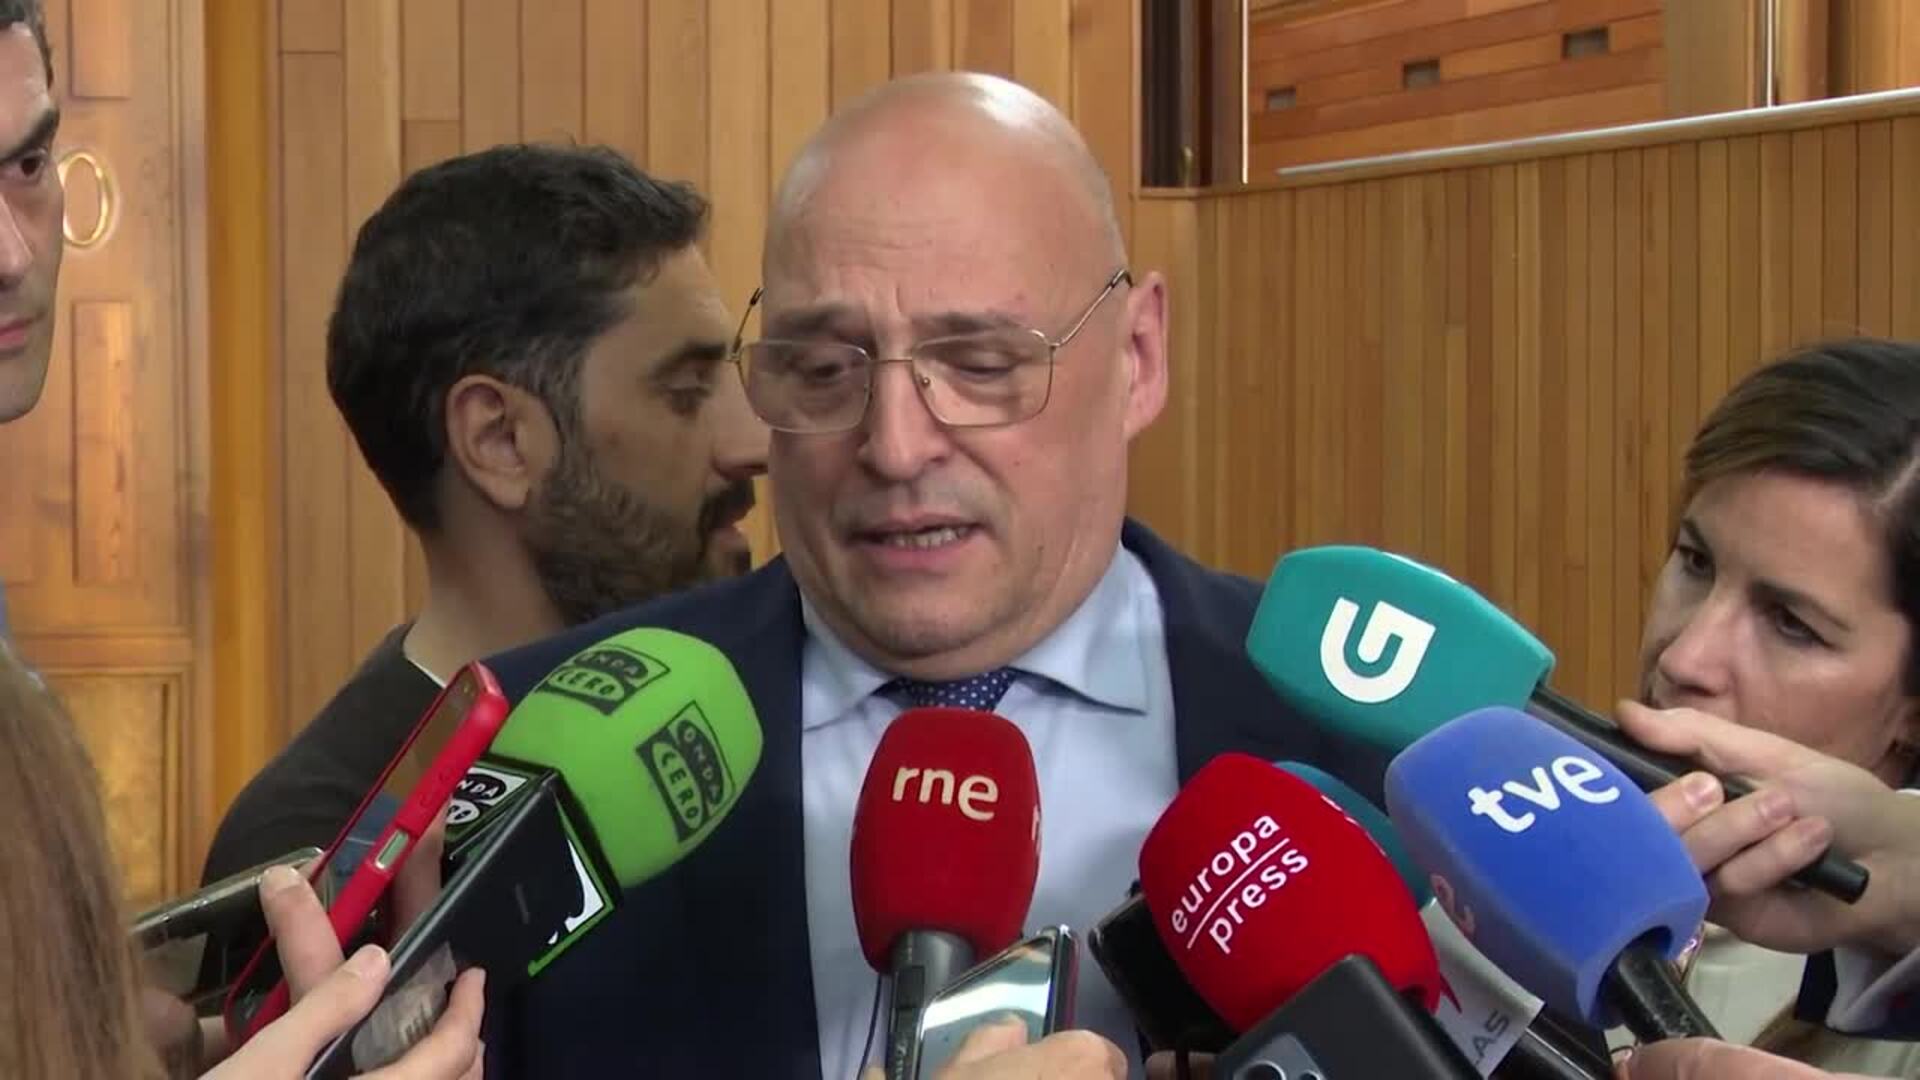 El diputado de DO "luchará" para que la provincia de Ourense "no esté discriminada"